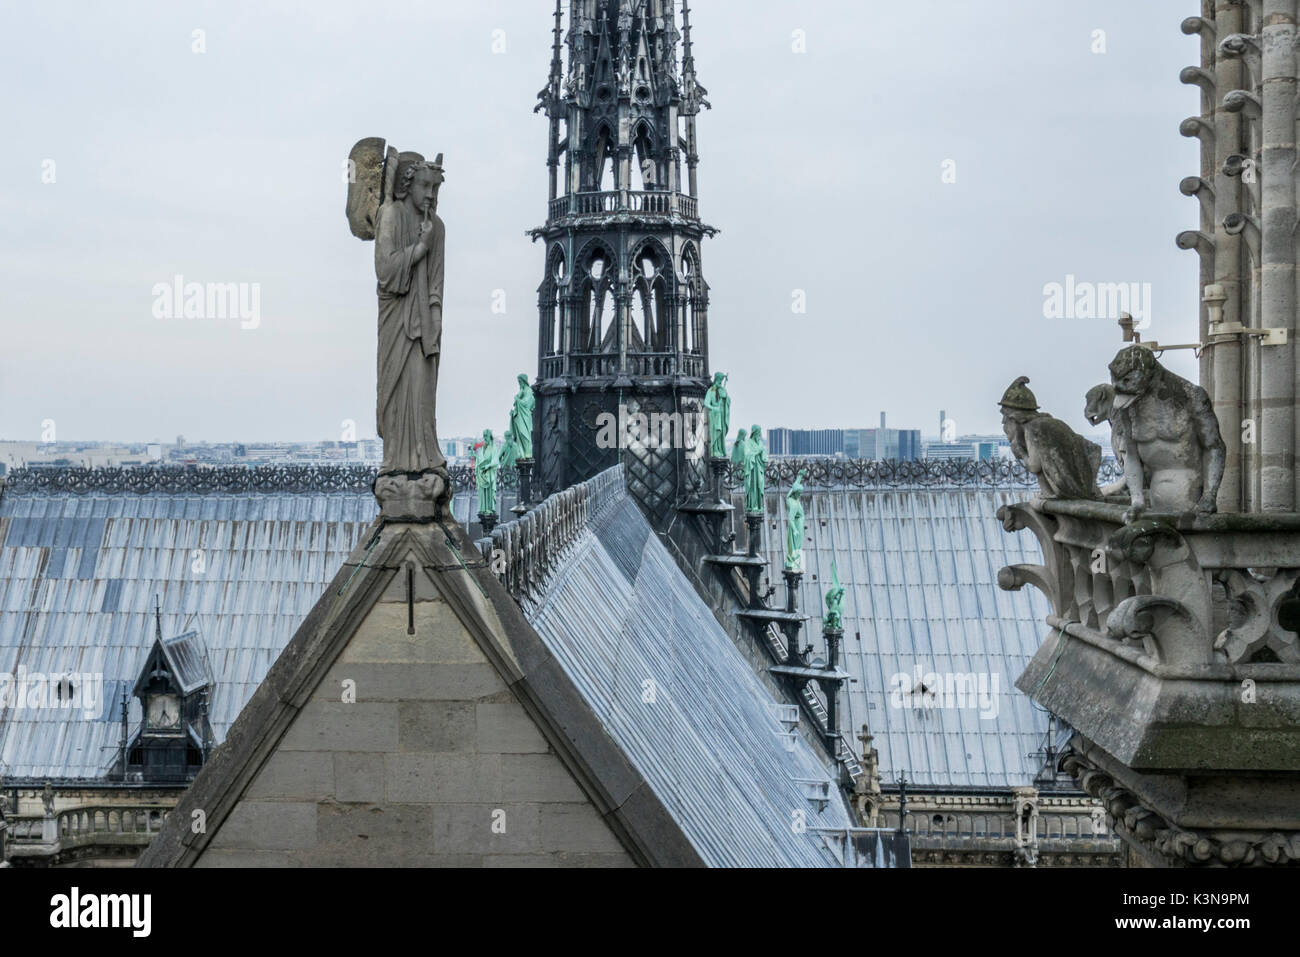 Gargouille sur la cathédrale Notre Dame, Paris, France Banque D'Images